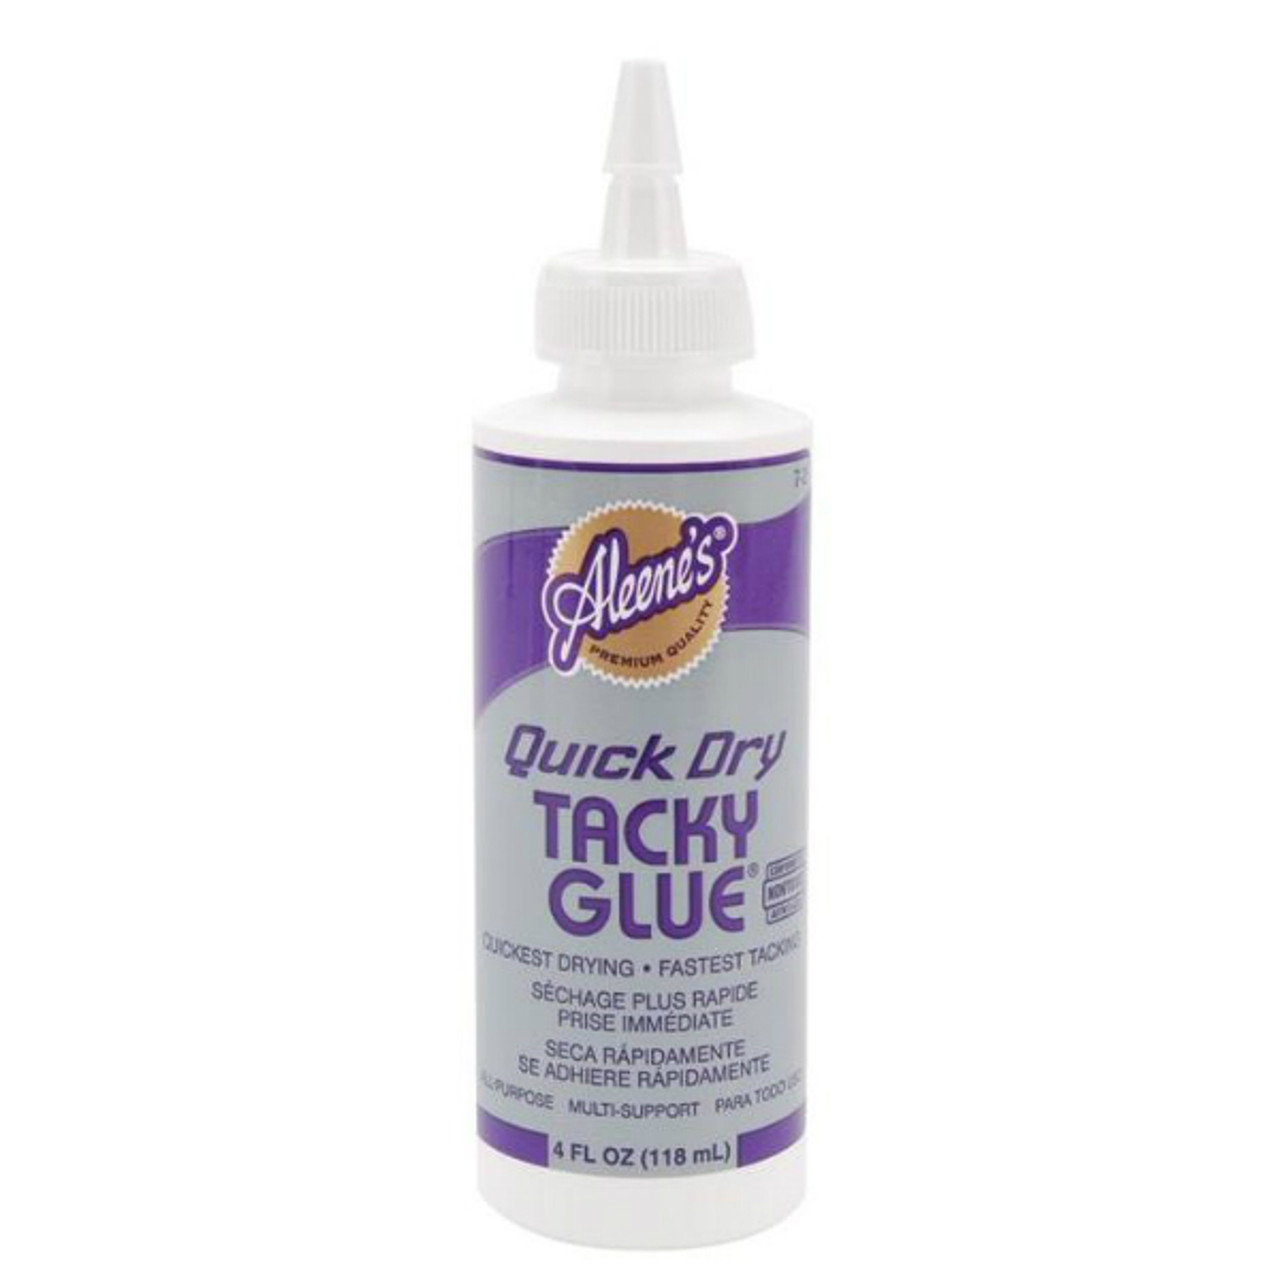 Quick Dry Tacky Glue - A Child's Dream